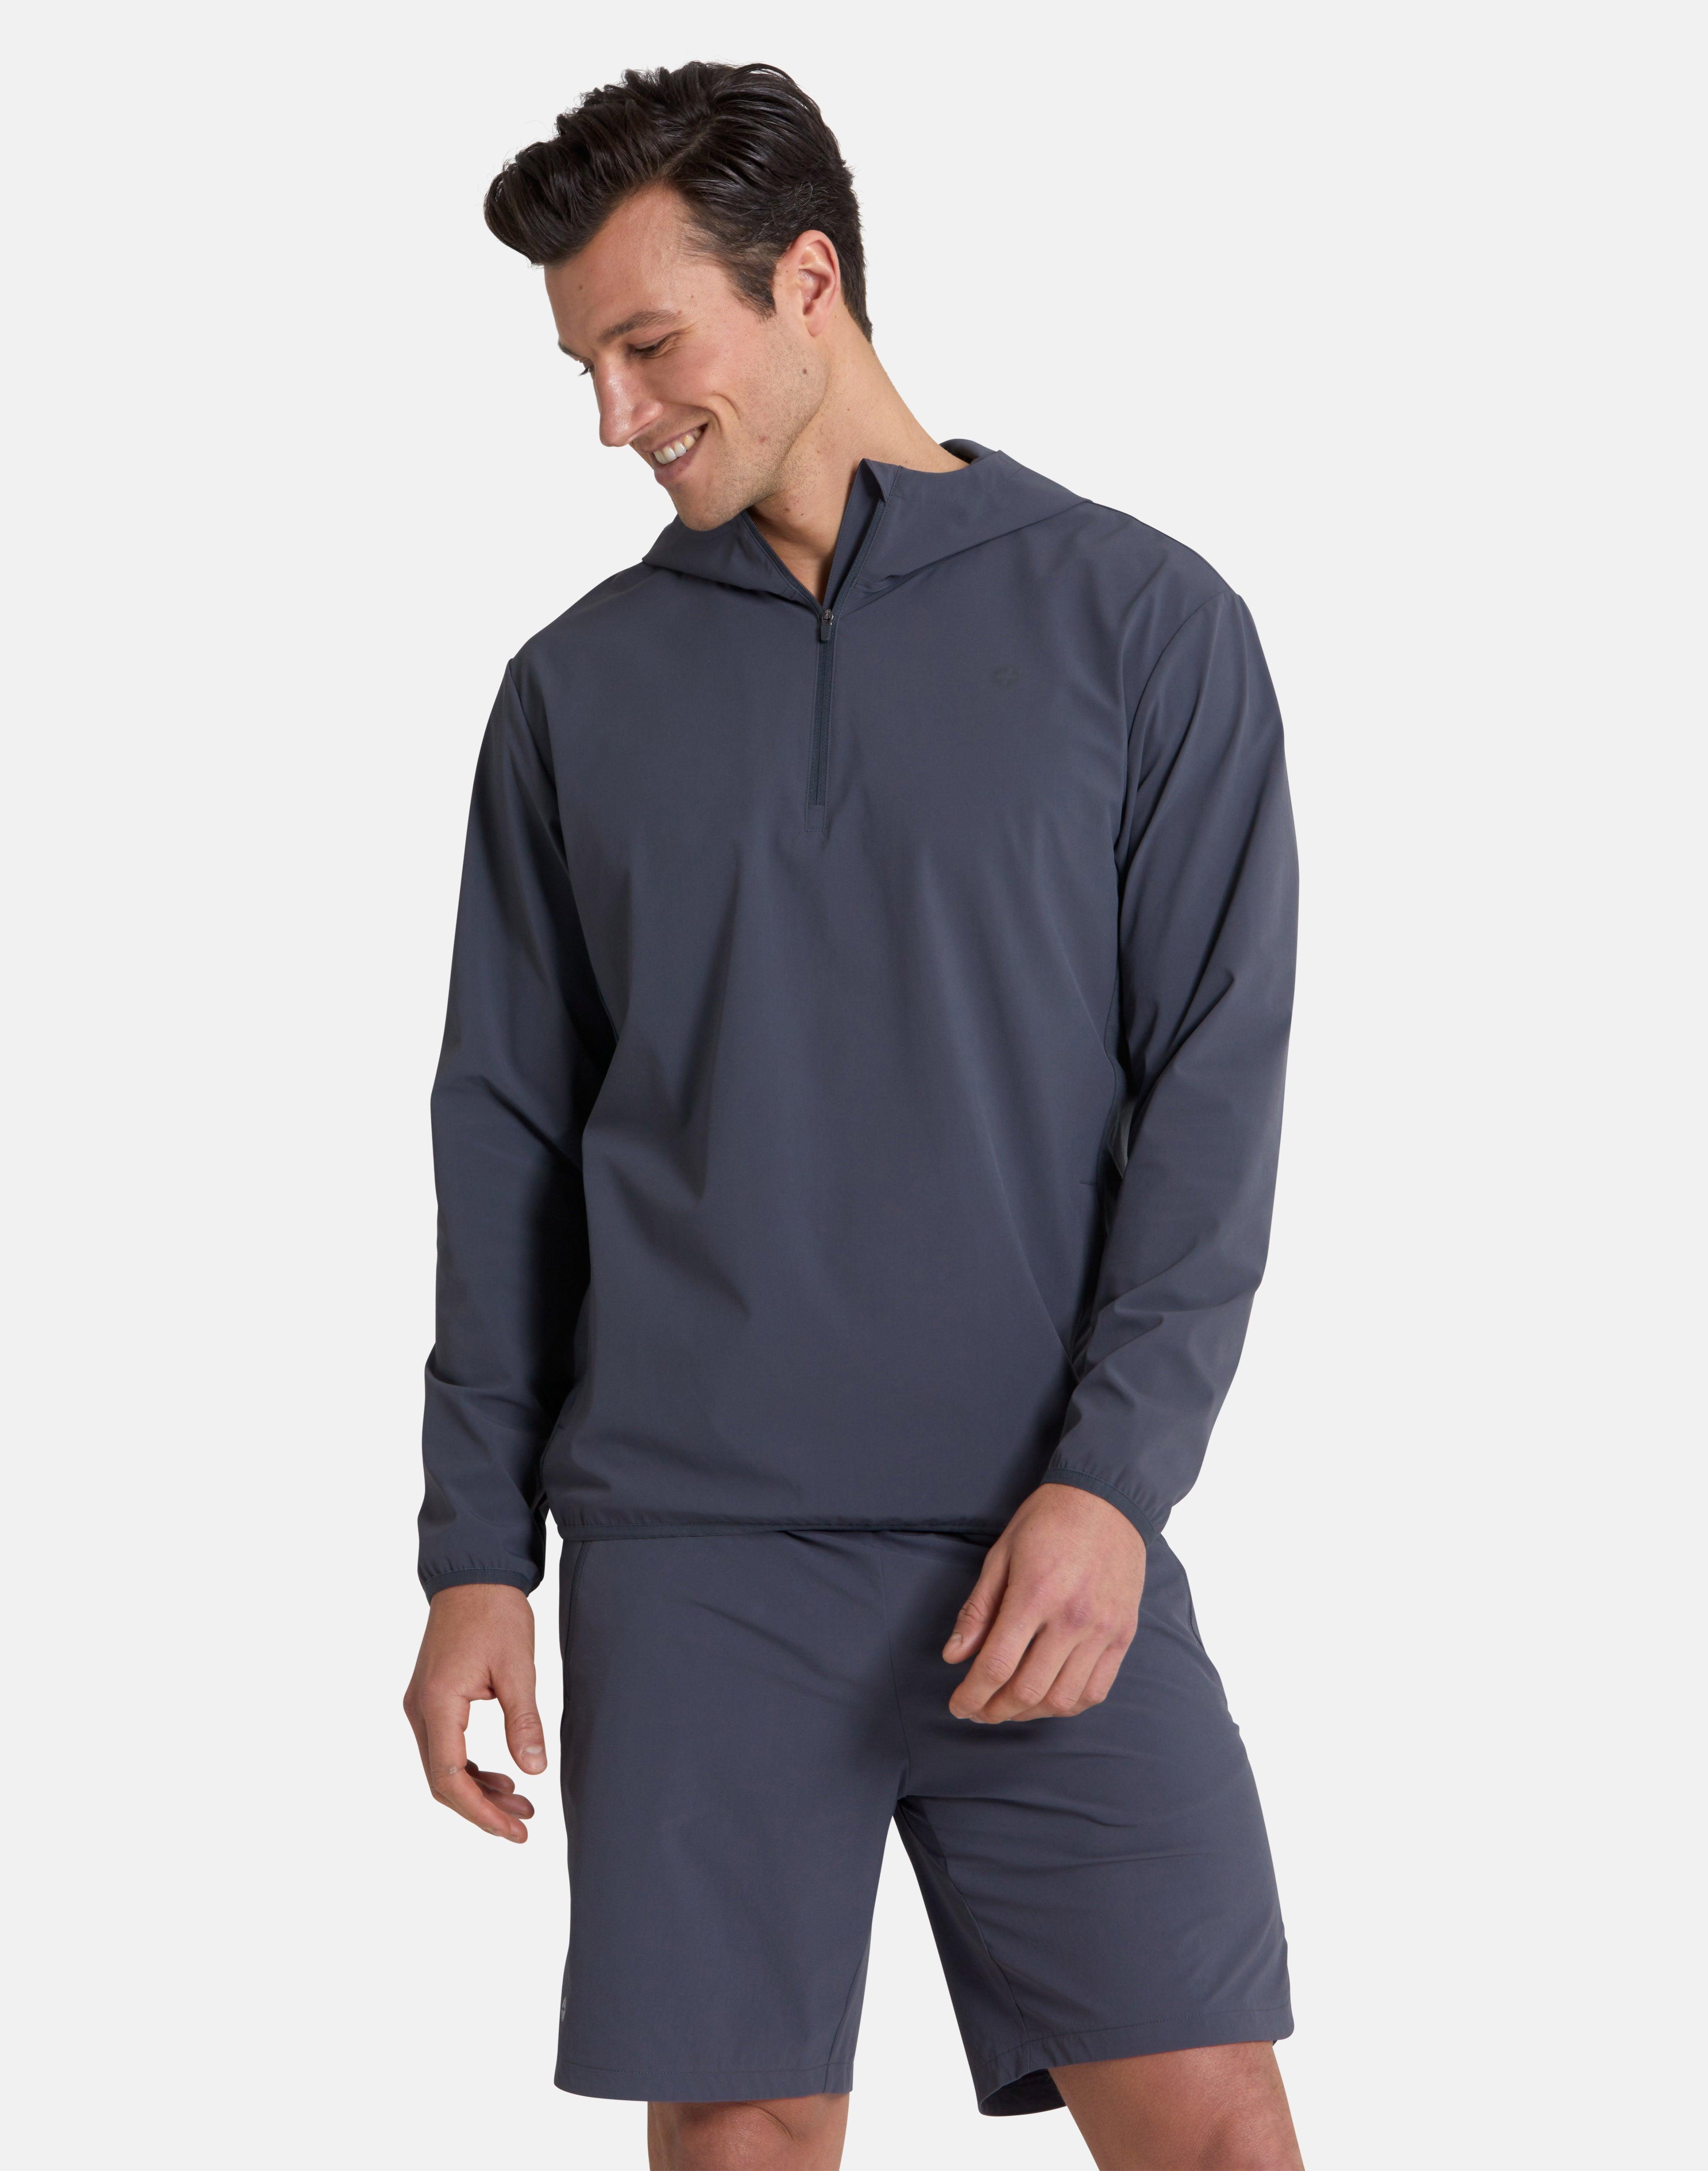 Adaptive 1/2 Zip Jacket in Orbit - Outerwear - Windsorbauders IE